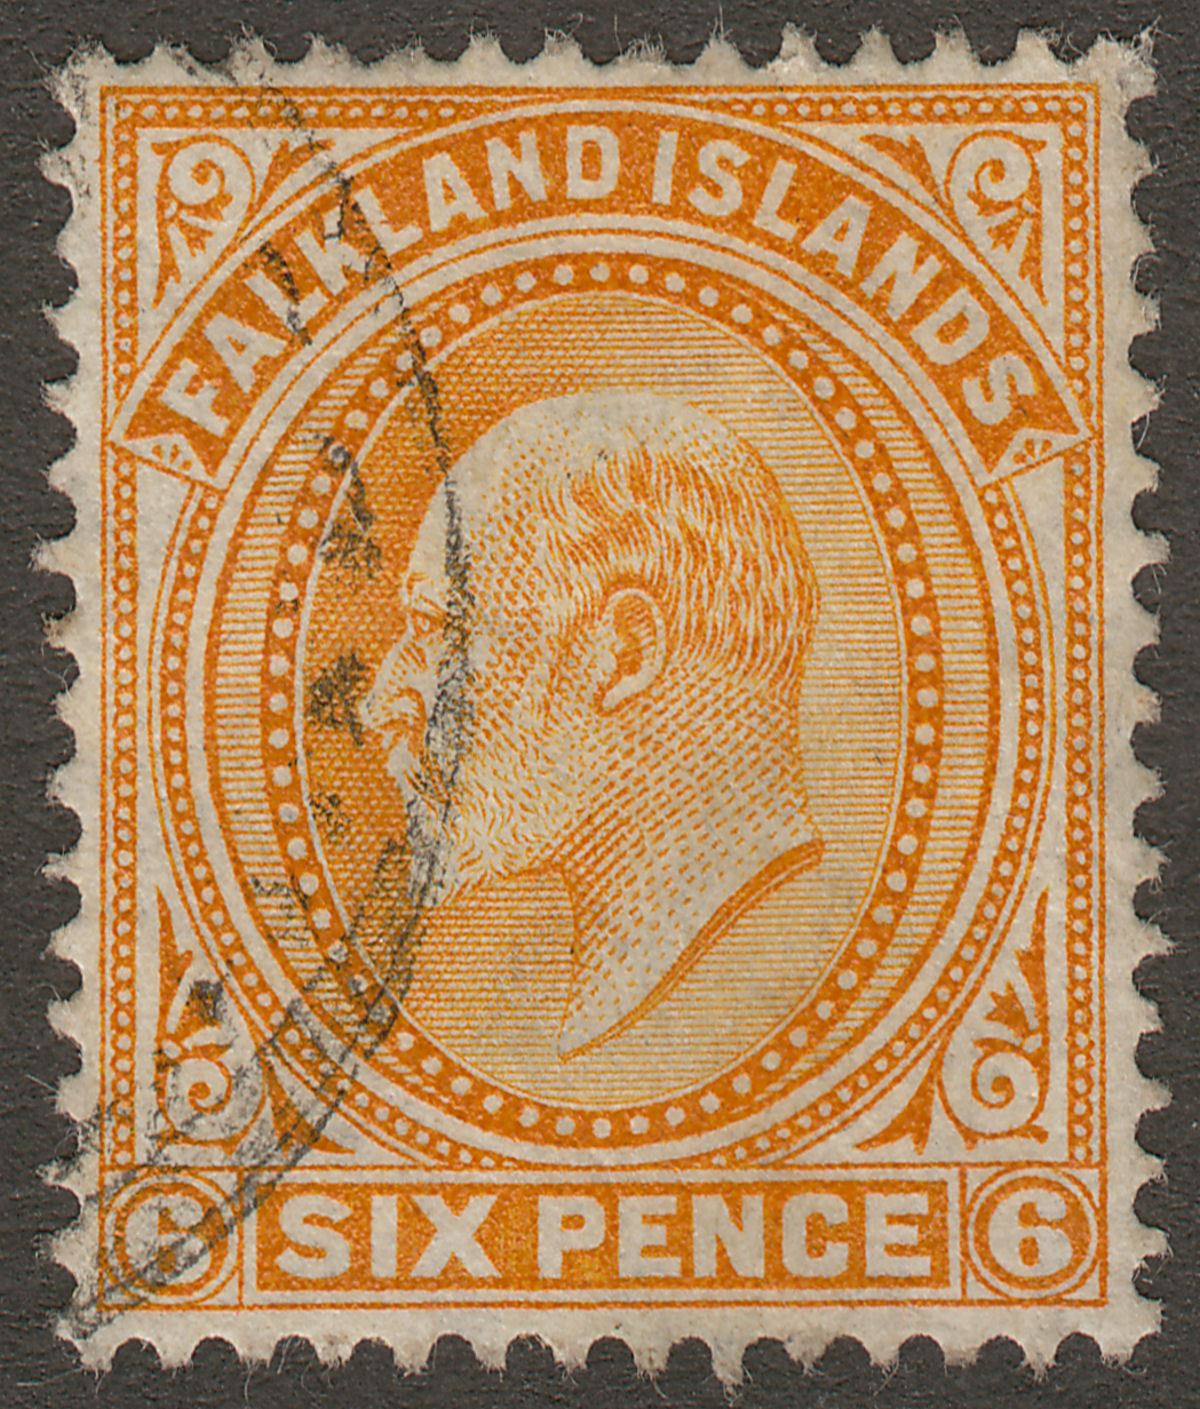 Falkland Islands 1904 KEVII 6d Orange Used SG47 cat £48 part postmark